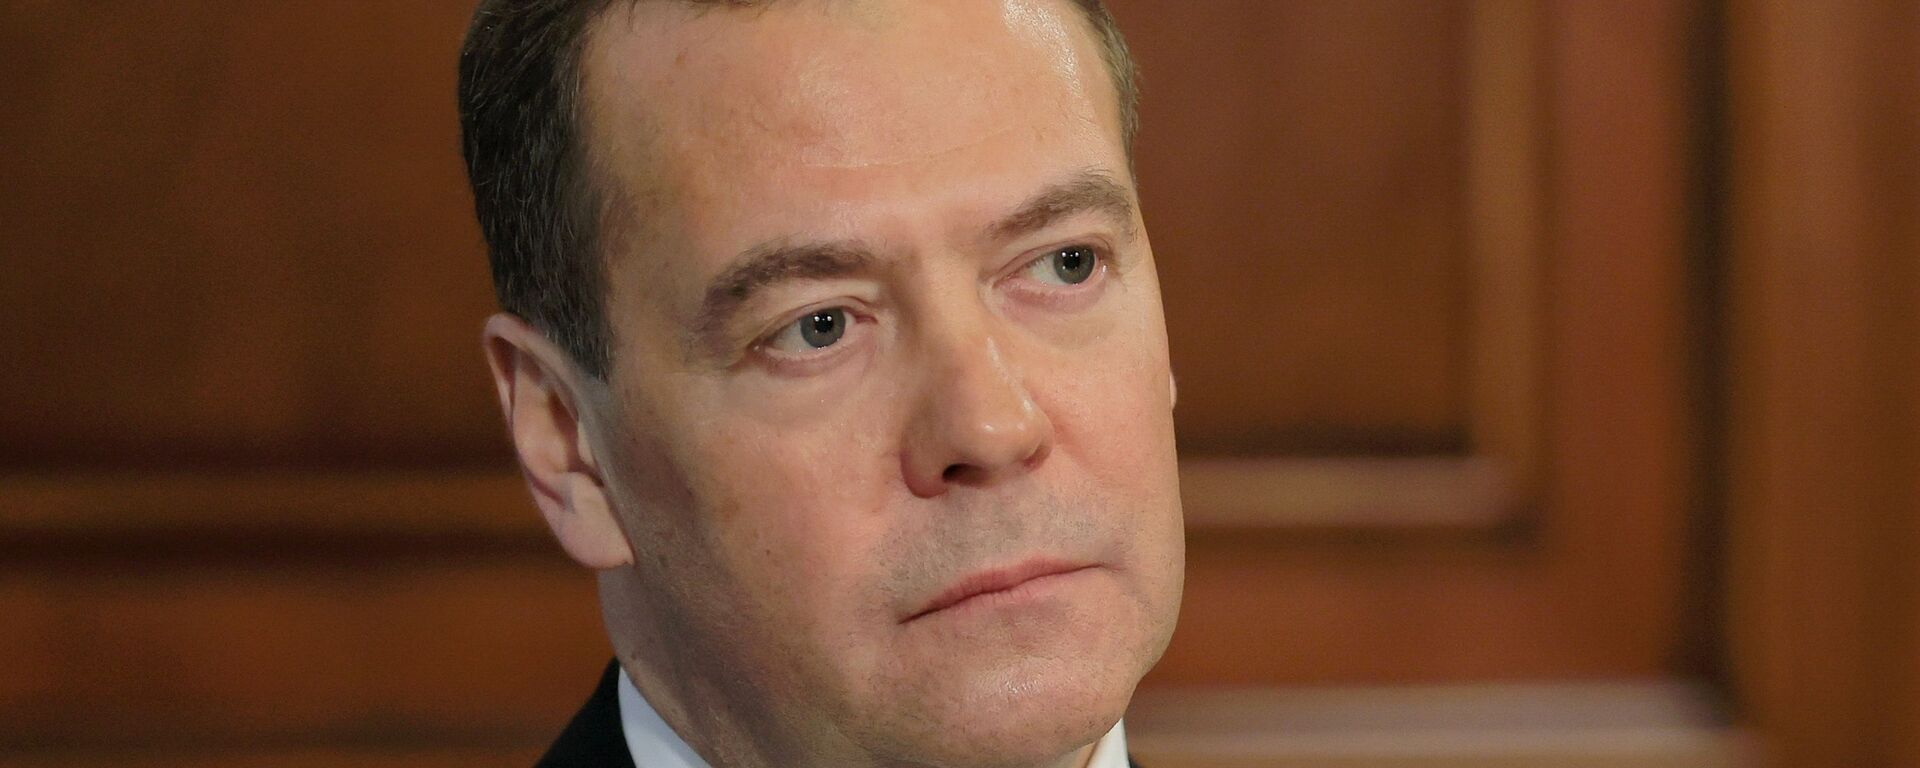 Заместитель председателя Совбеза РФ Д. Медведев дал интервью российским СМИ - Sputnik Абхазия, 1920, 23.04.2021